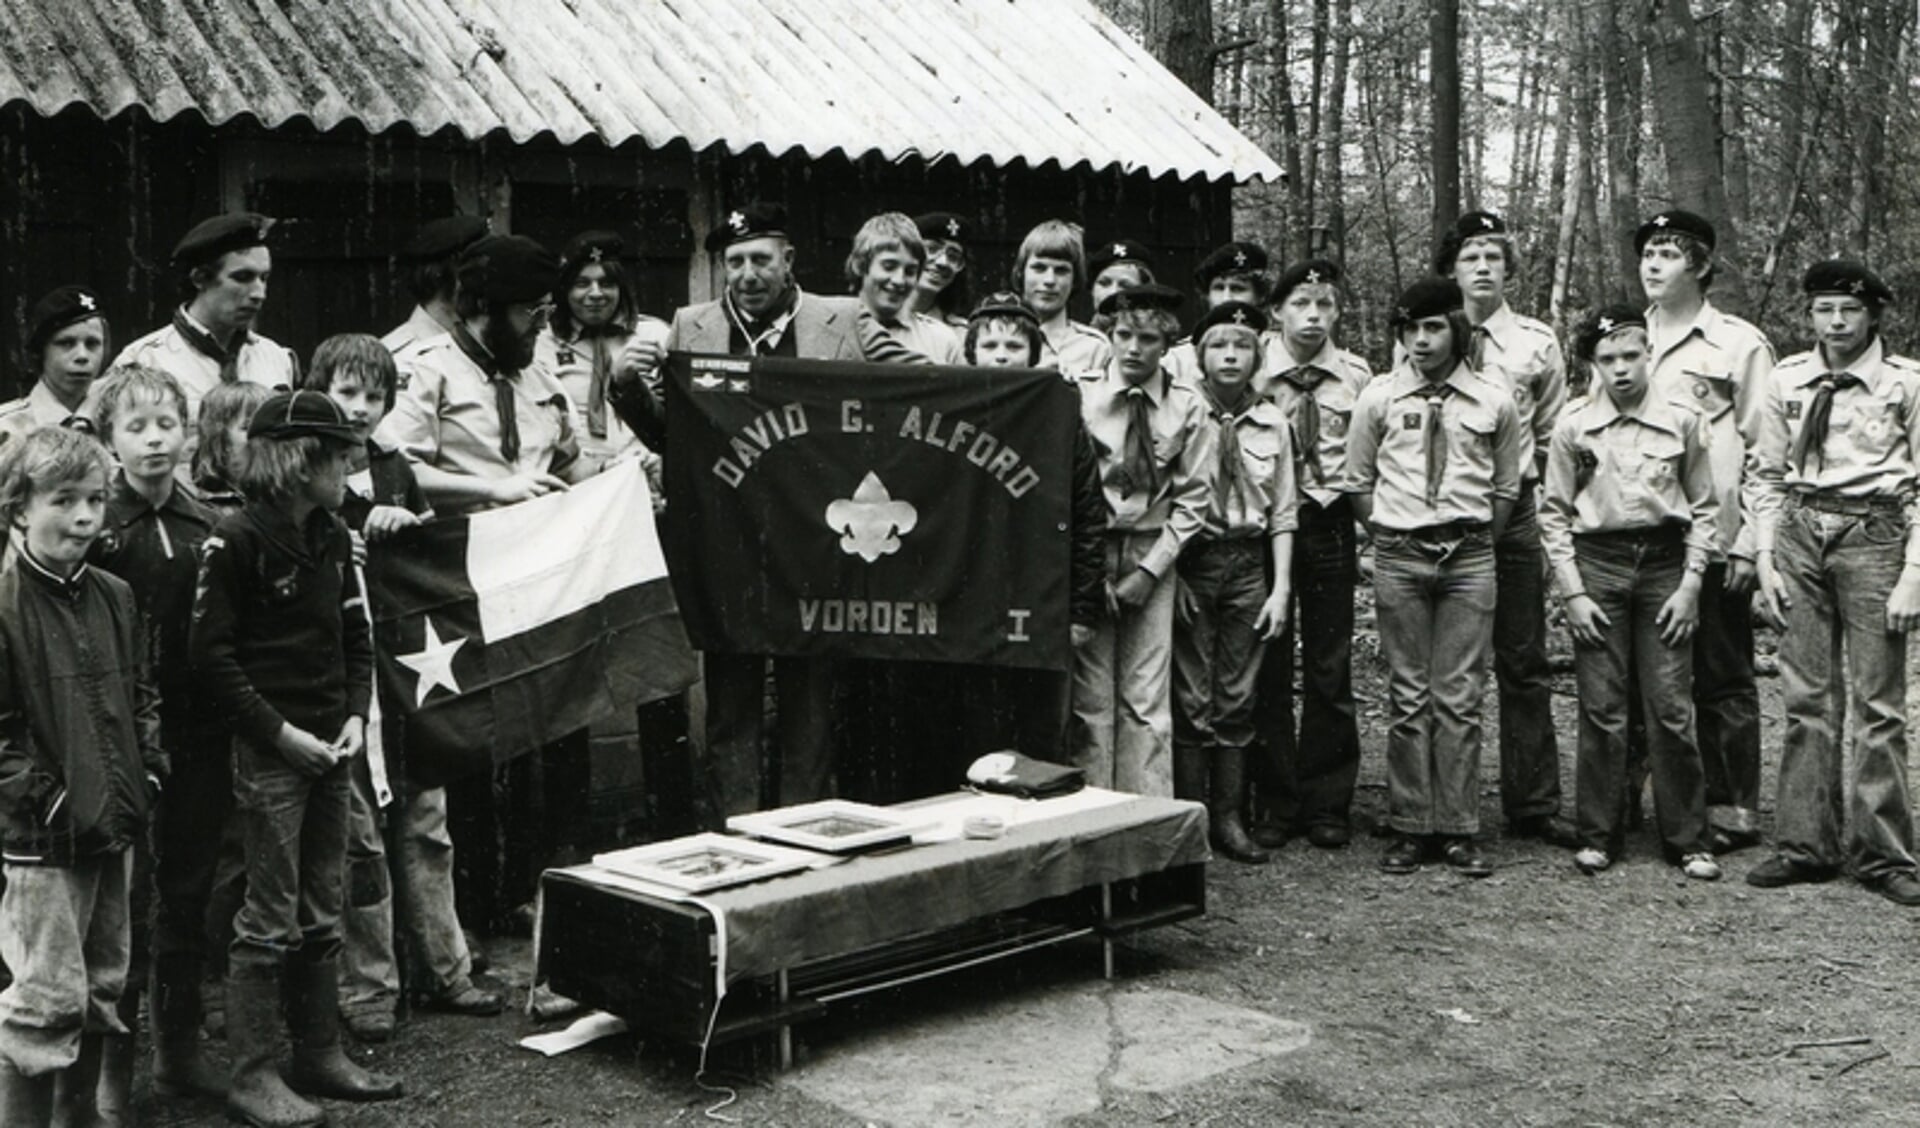 David G. Alford brengt in 1978 een bezoek aan Scouting Vorden. Foto: PR